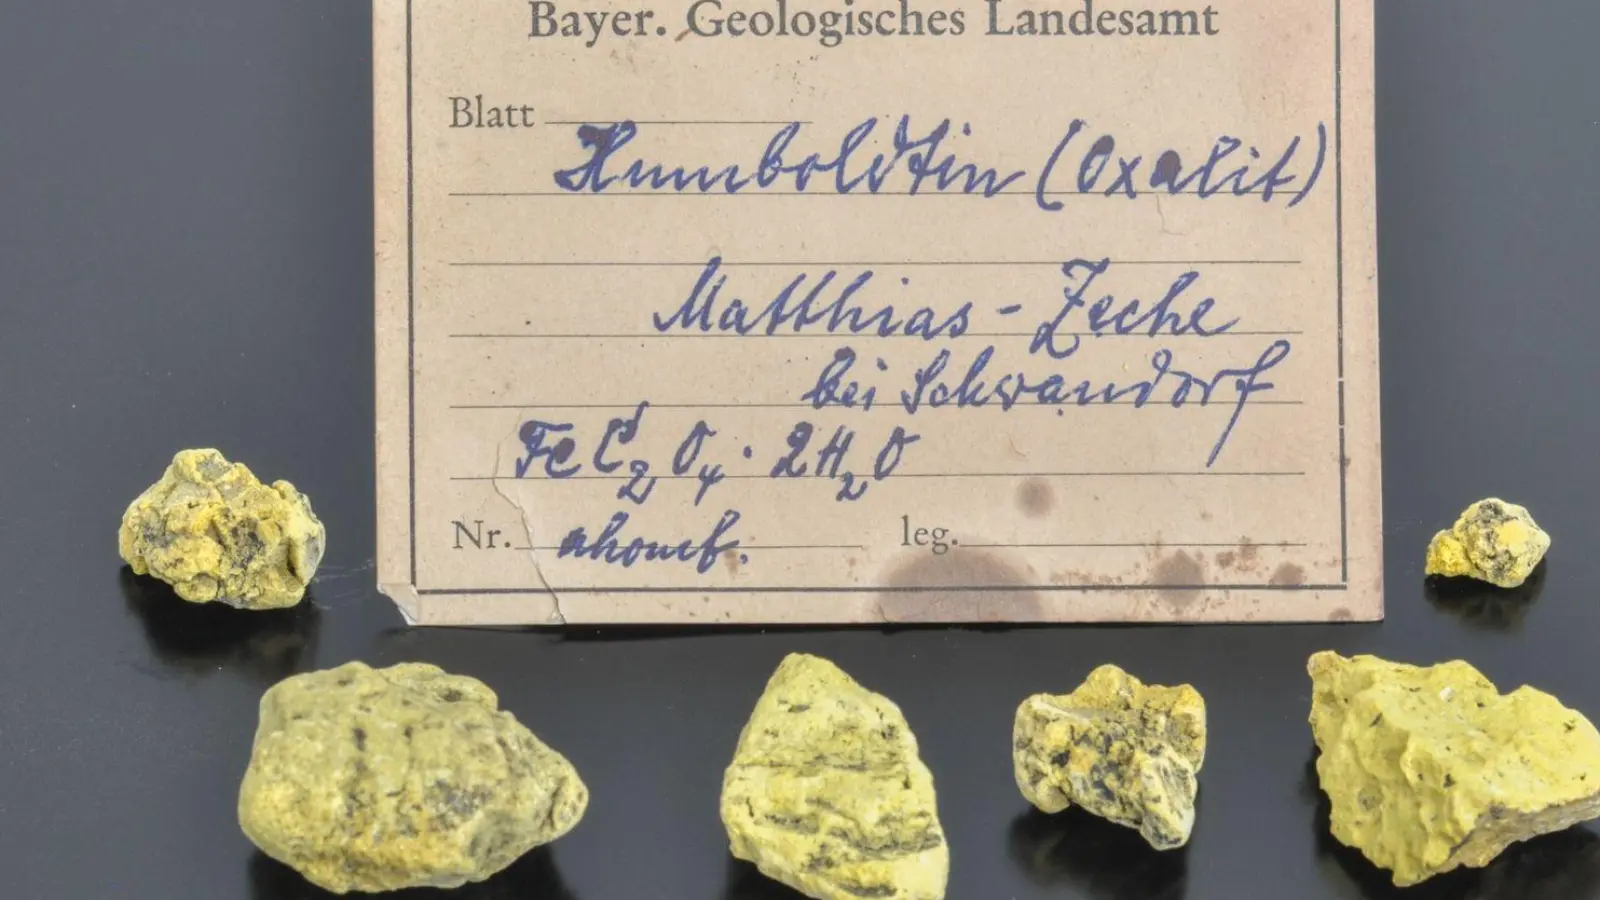 Das seltene Mineral Humboldtin besteht aus Kohlenstoff und Wasser und enthält gleichzeitig auch Eisen. (Foto: Kemner/LfU/dpa)